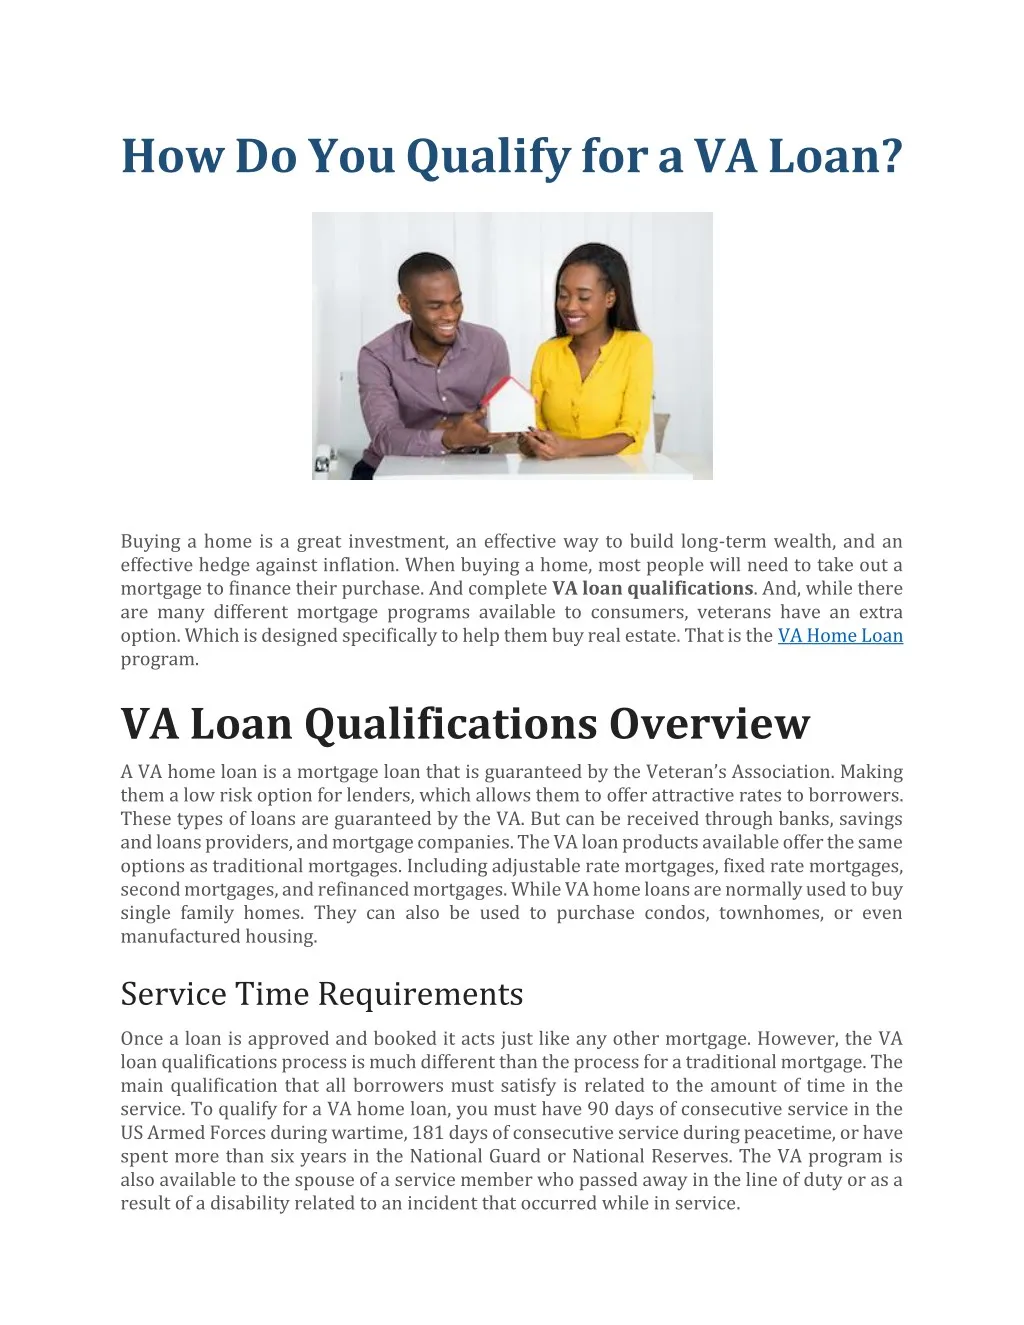 how do you qualify for a va loan